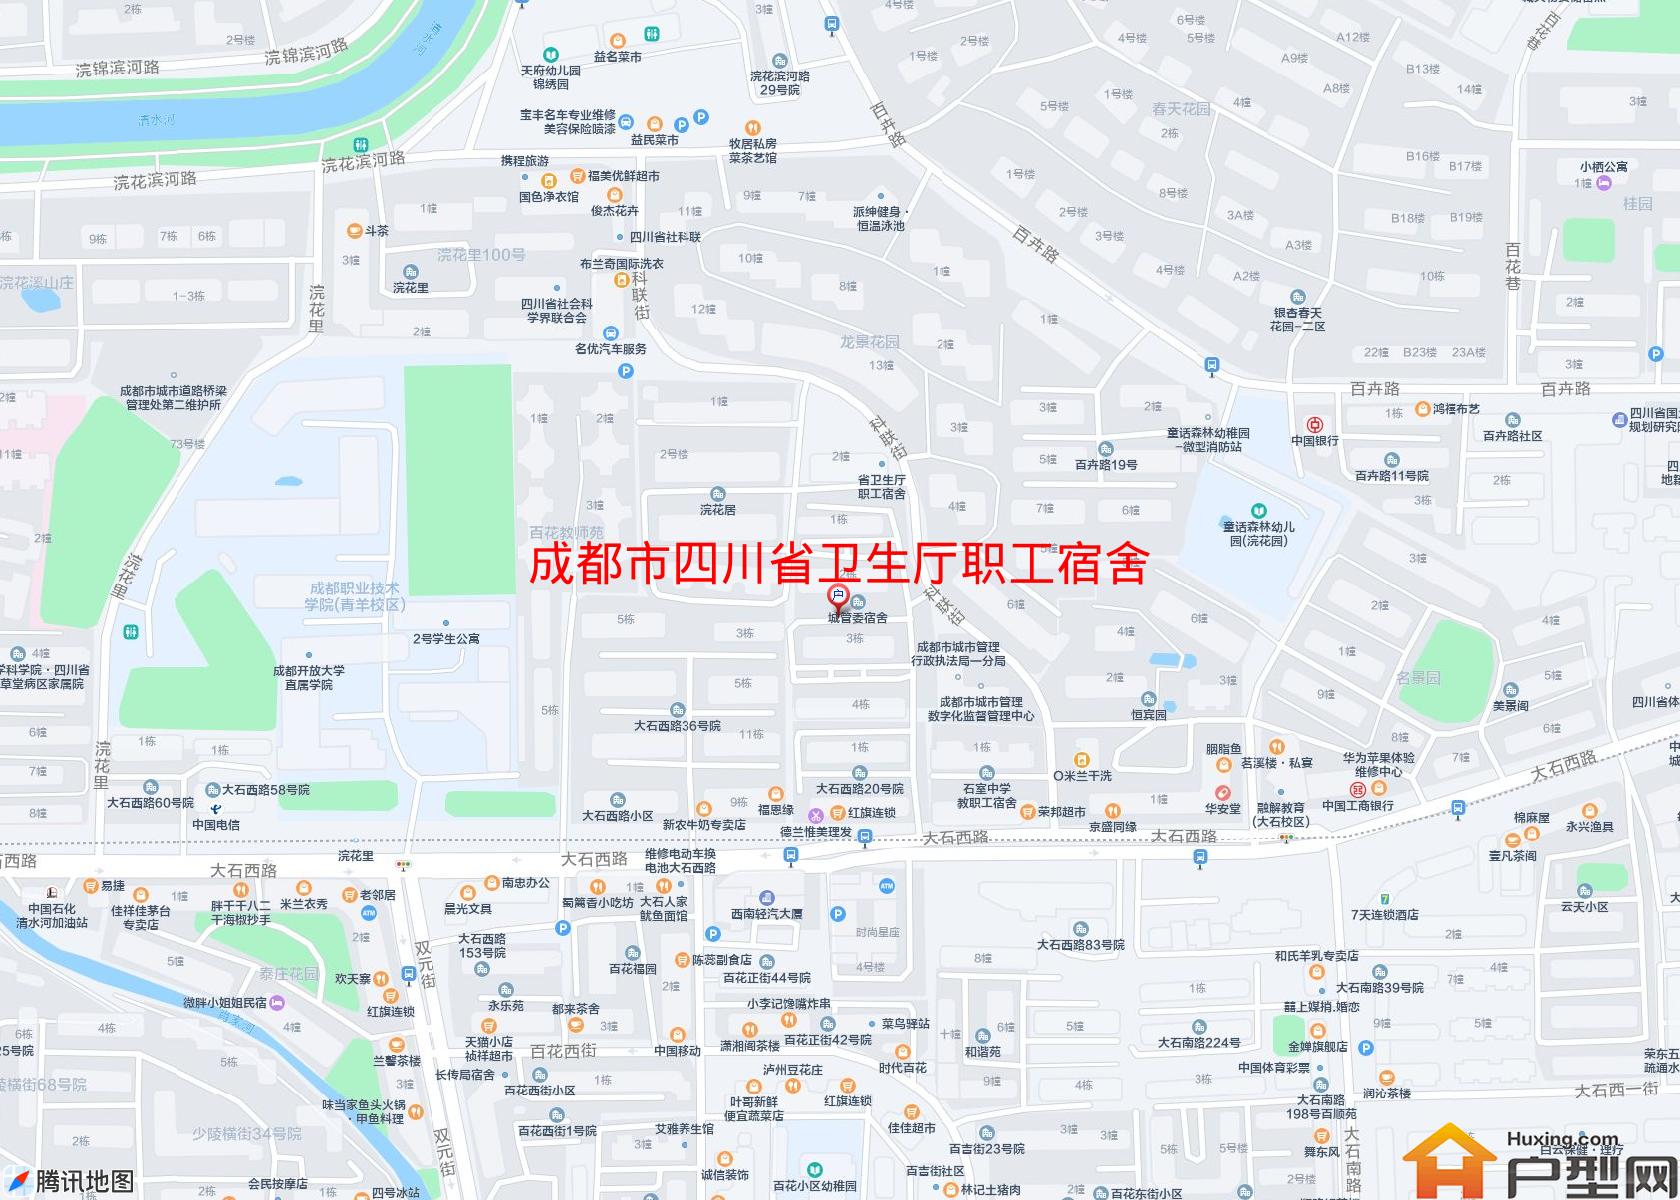 四川省卫生厅职工宿舍小区 - 户型网